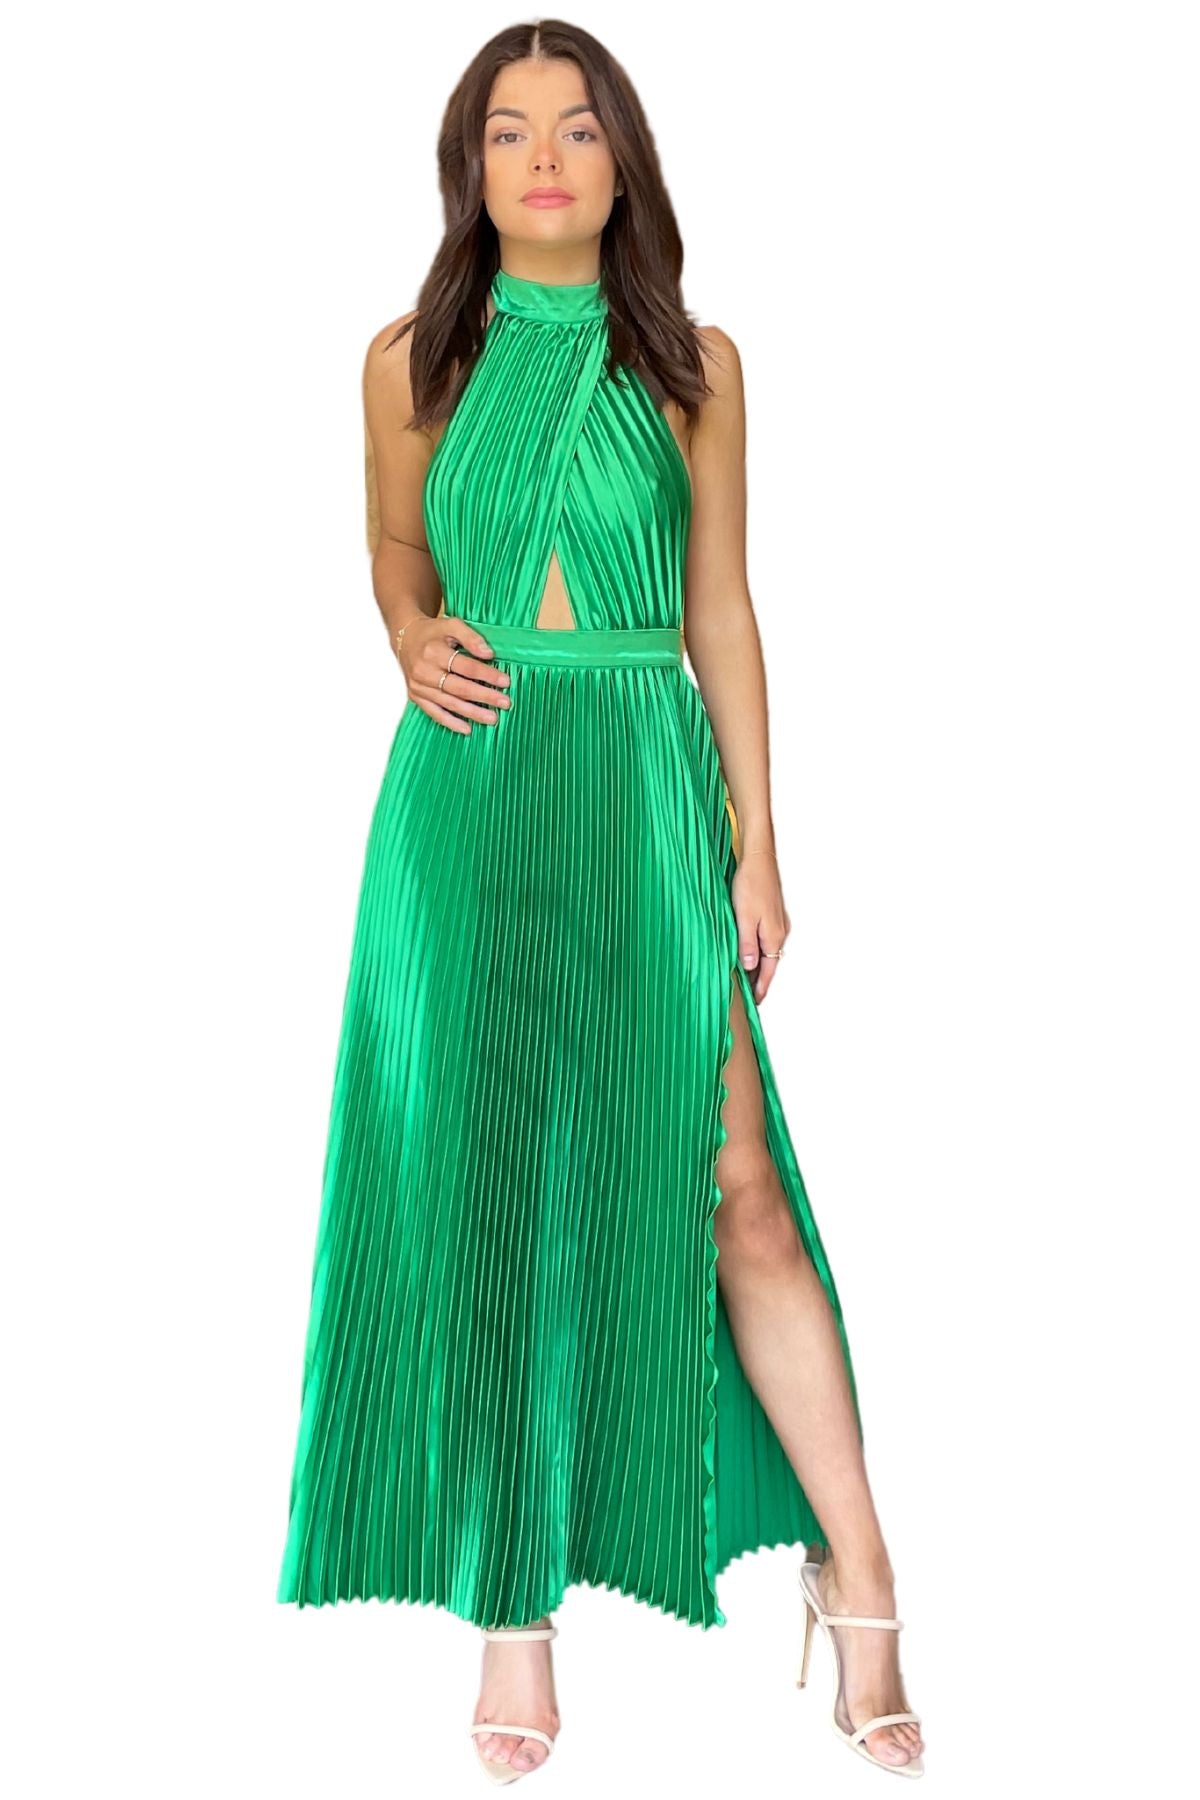 L'Idee L'IDEE Renaissance Split Gown (Bright Green) - RRP $359 - USETHISFORWEBSITEPRODUCT_c91a9b1d-1944-4f15-816d-362be774b708.jpg